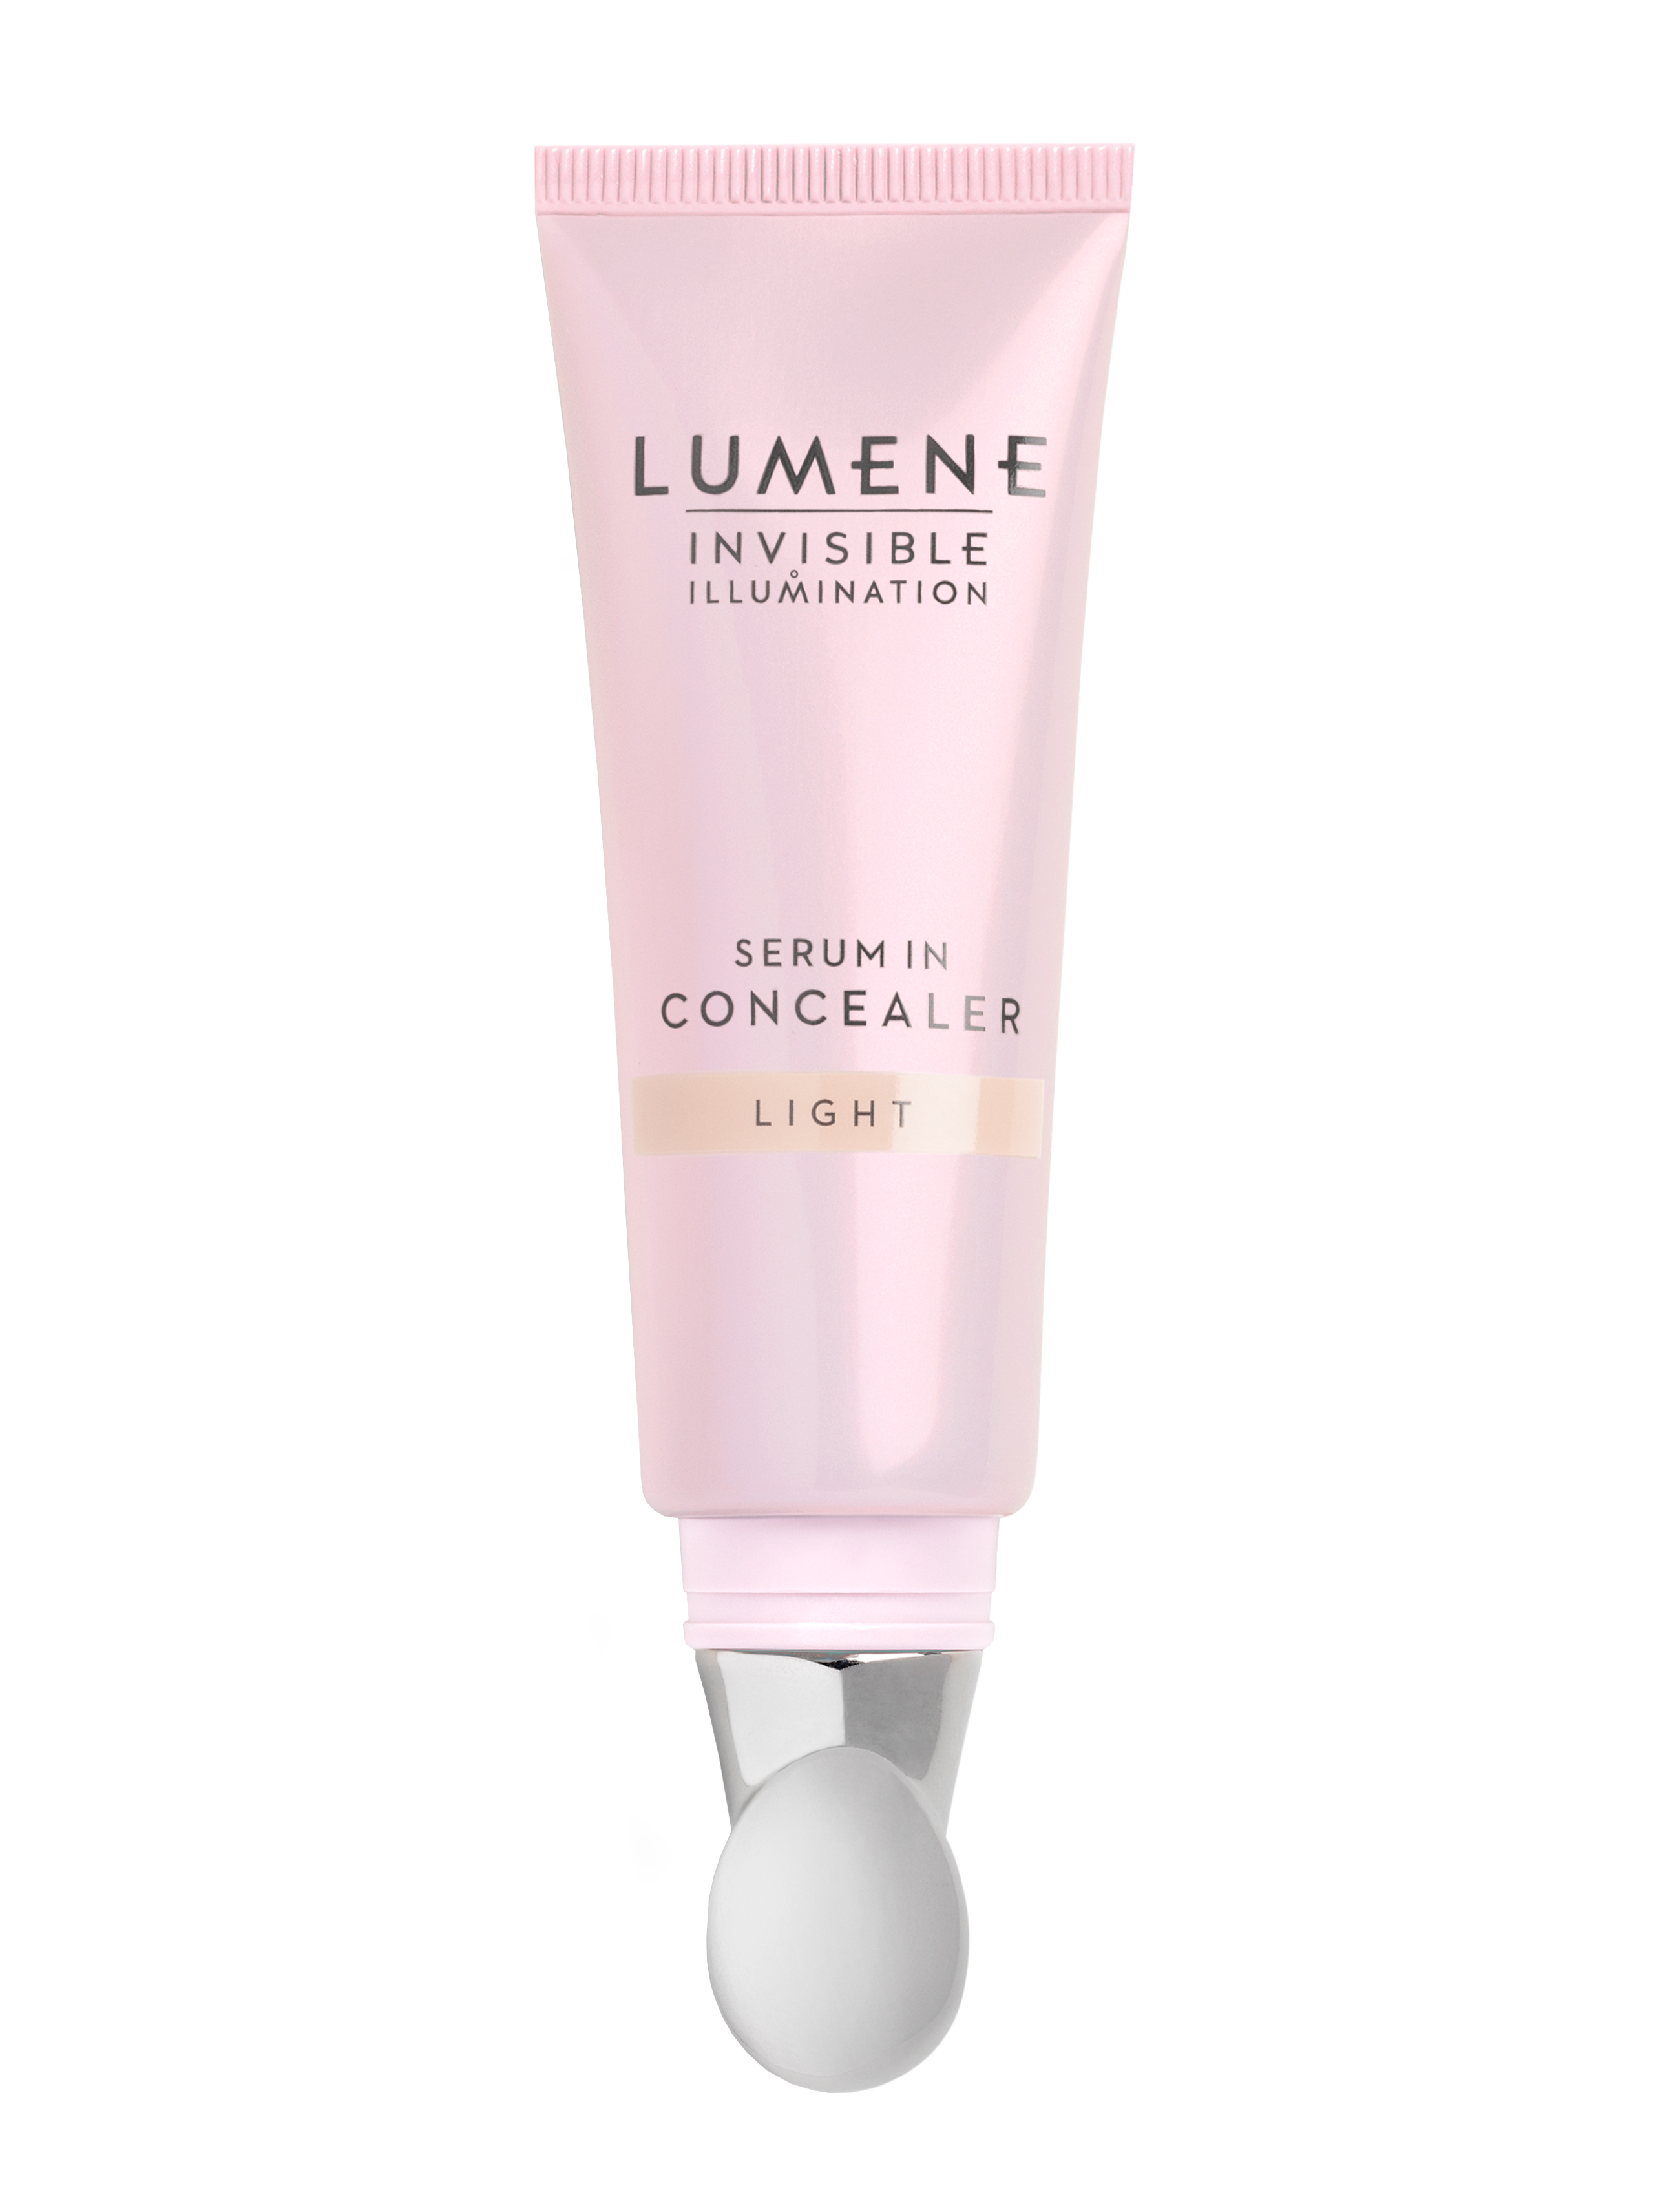 Lumene Invisible Illumination Serum In Concealer, Light, 10 ml